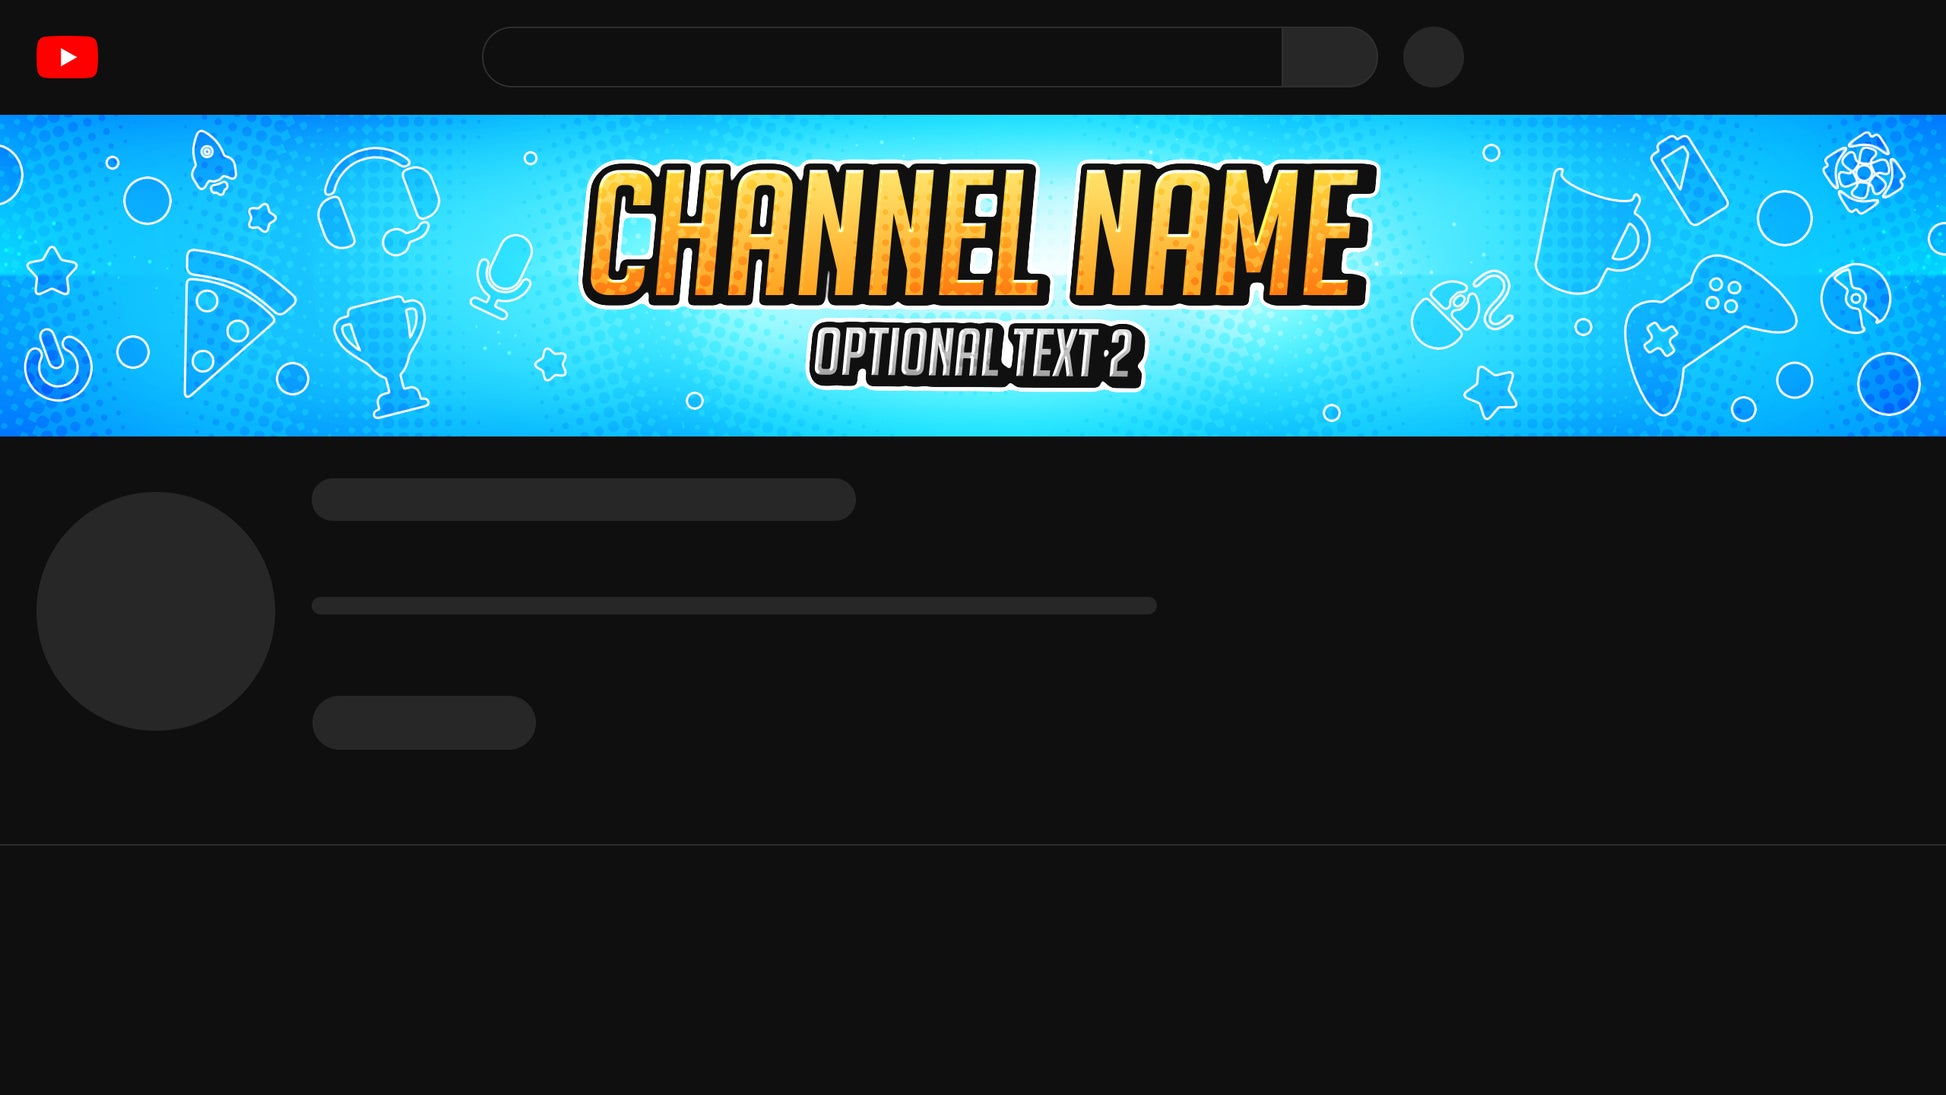 Gaming  Channel banner   banner design, Gaming banner,   design